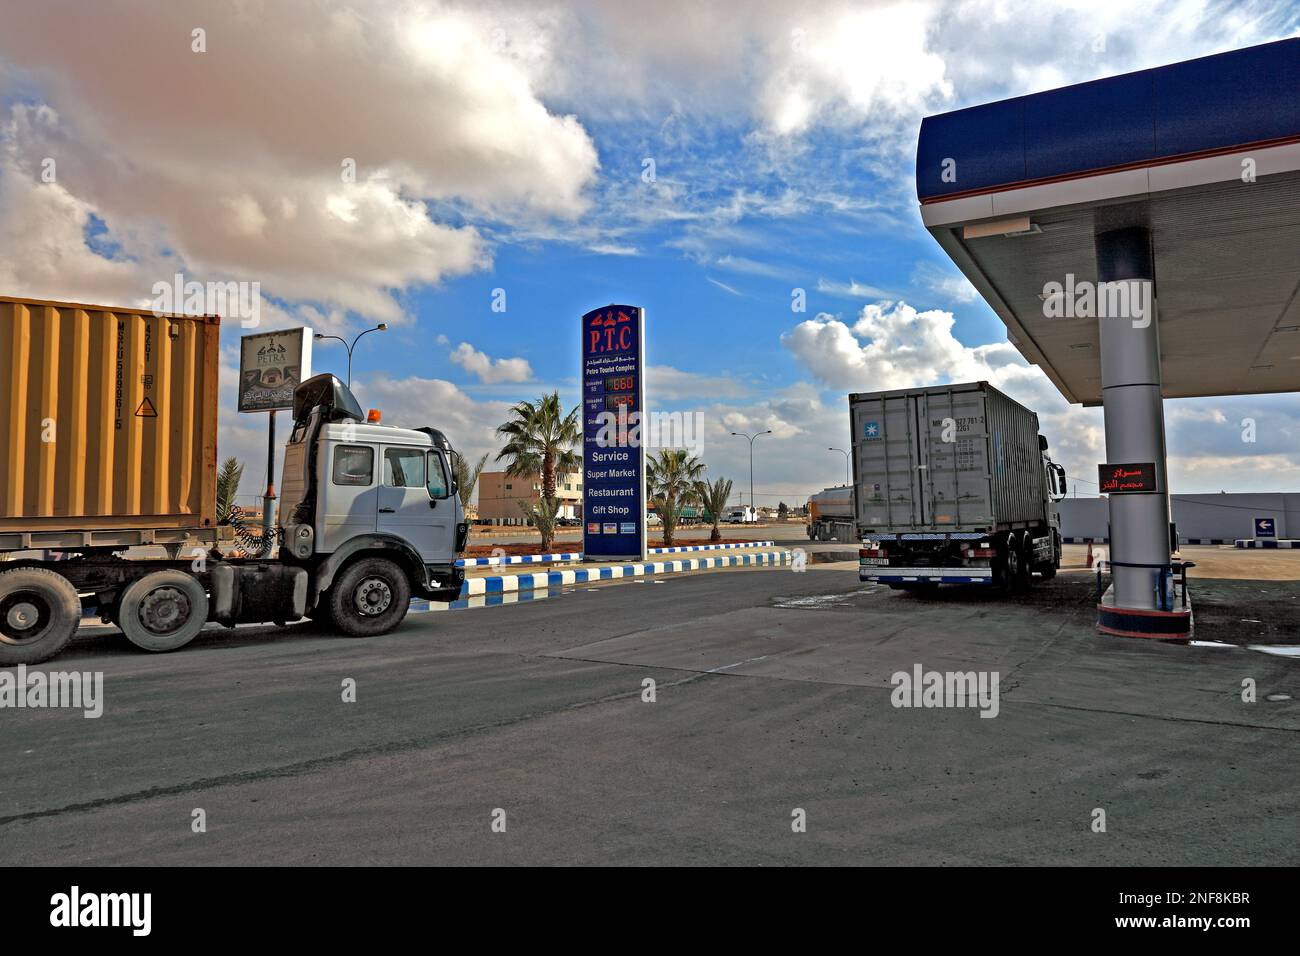 Tankstelle en Jordanien / station-service en Jordanie Banque D'Images